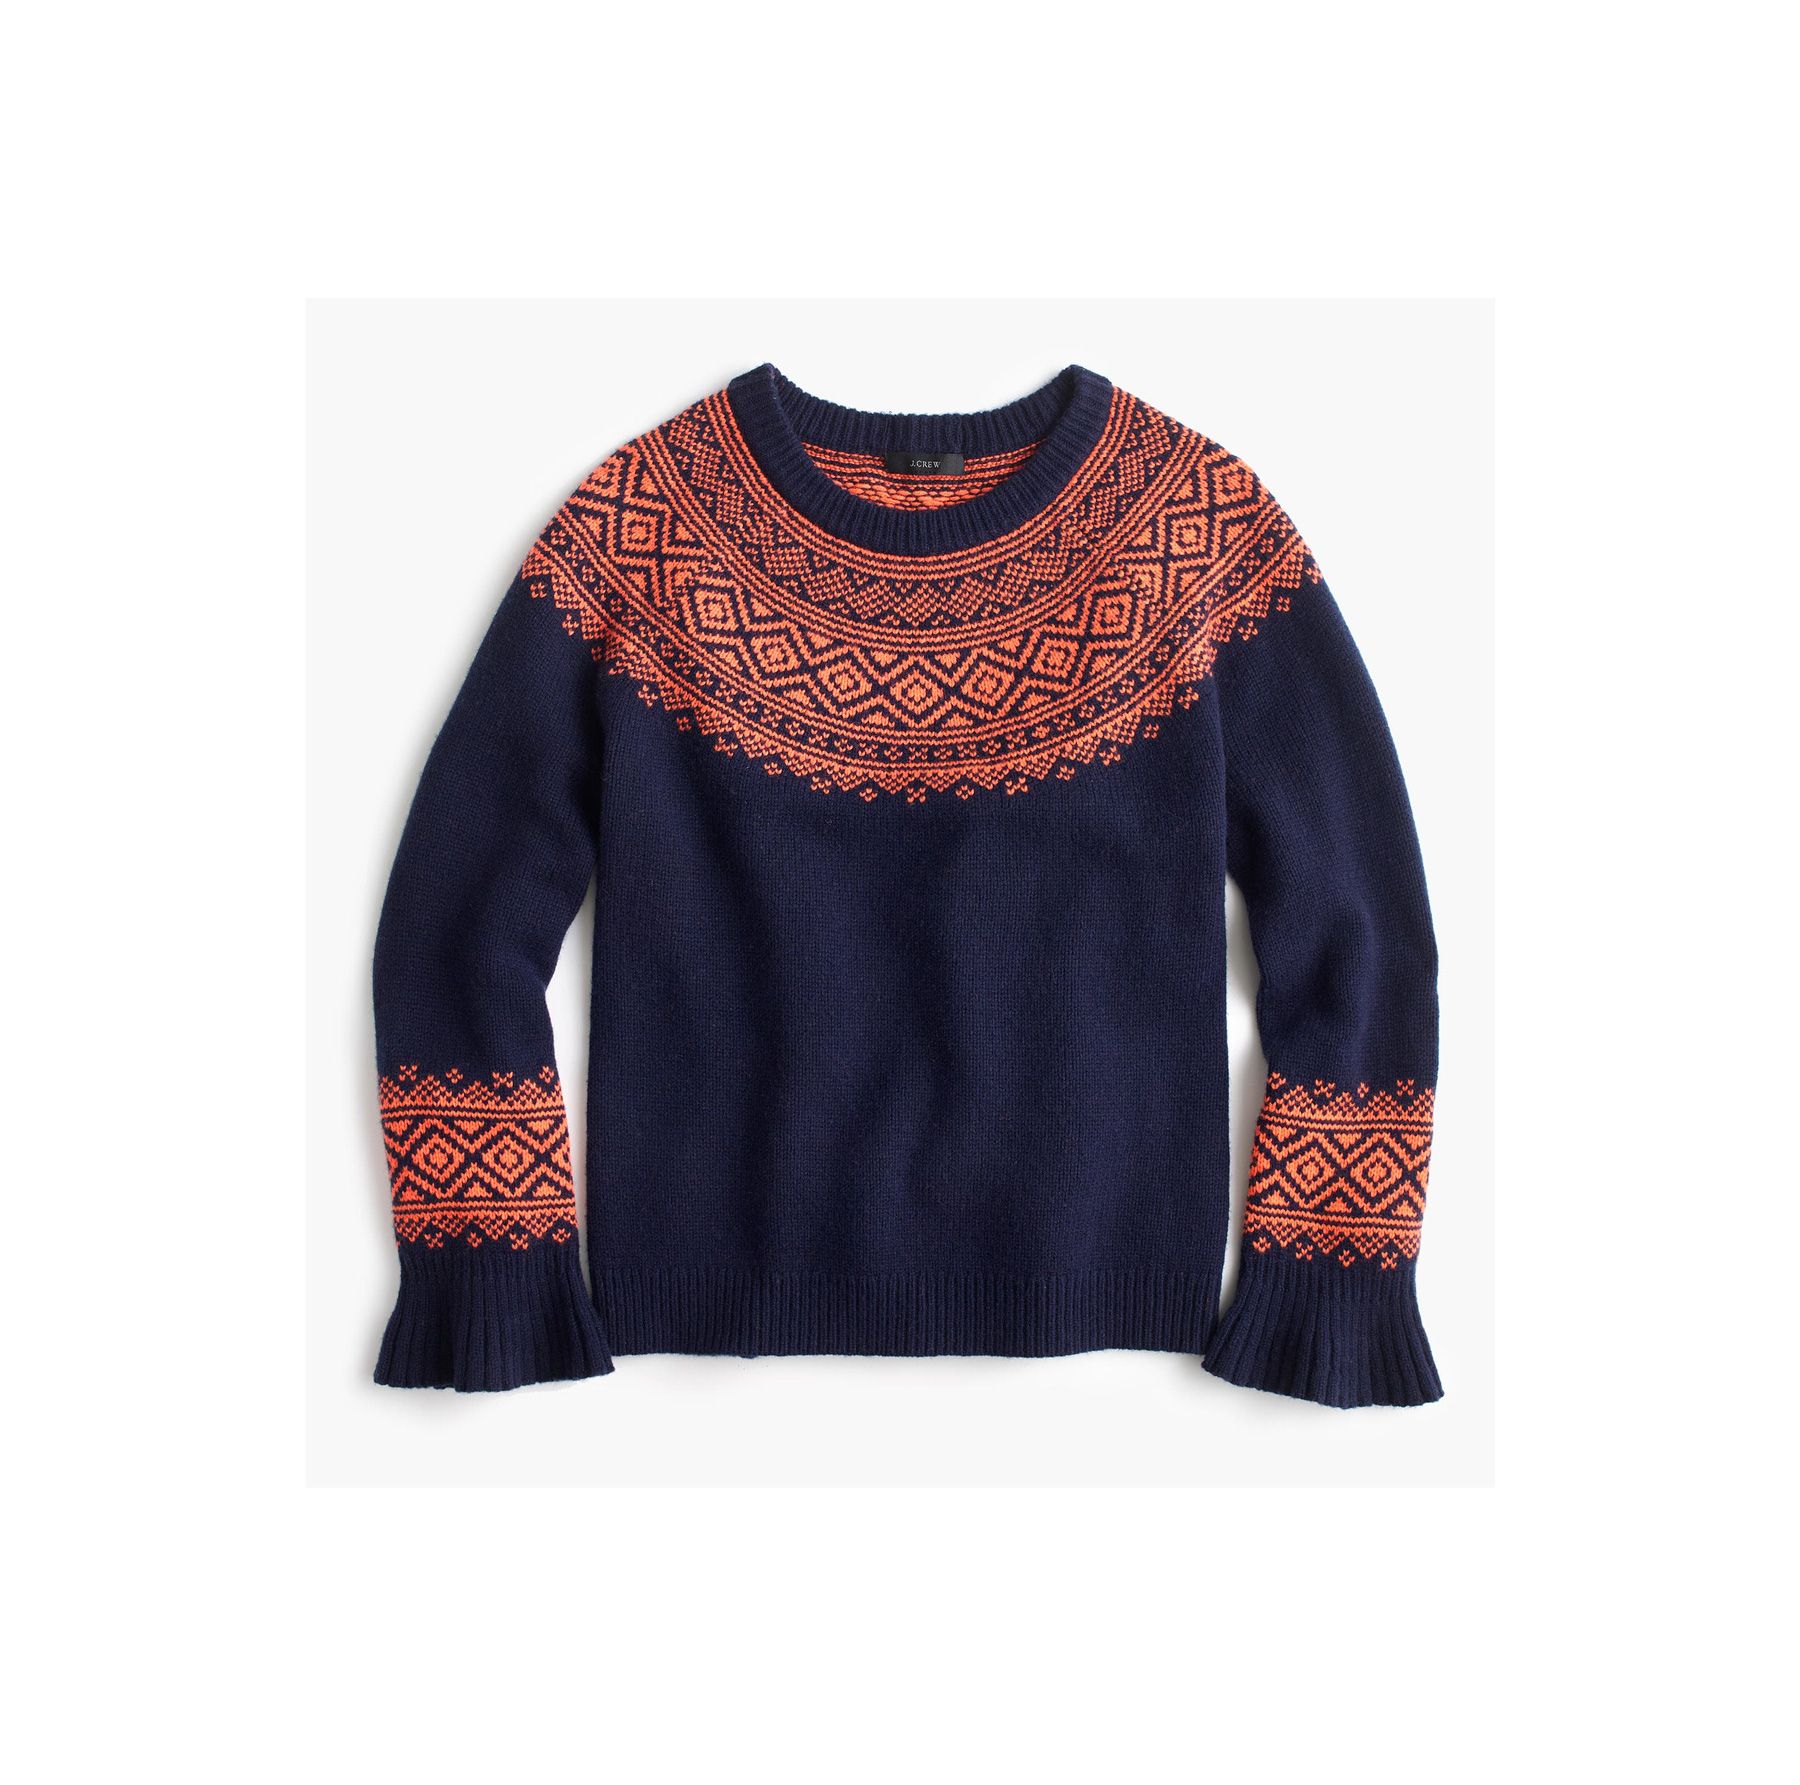 Seis suéteres aconchegantes para comprar na venda excelente da Black Friday 2017 da J. Crew